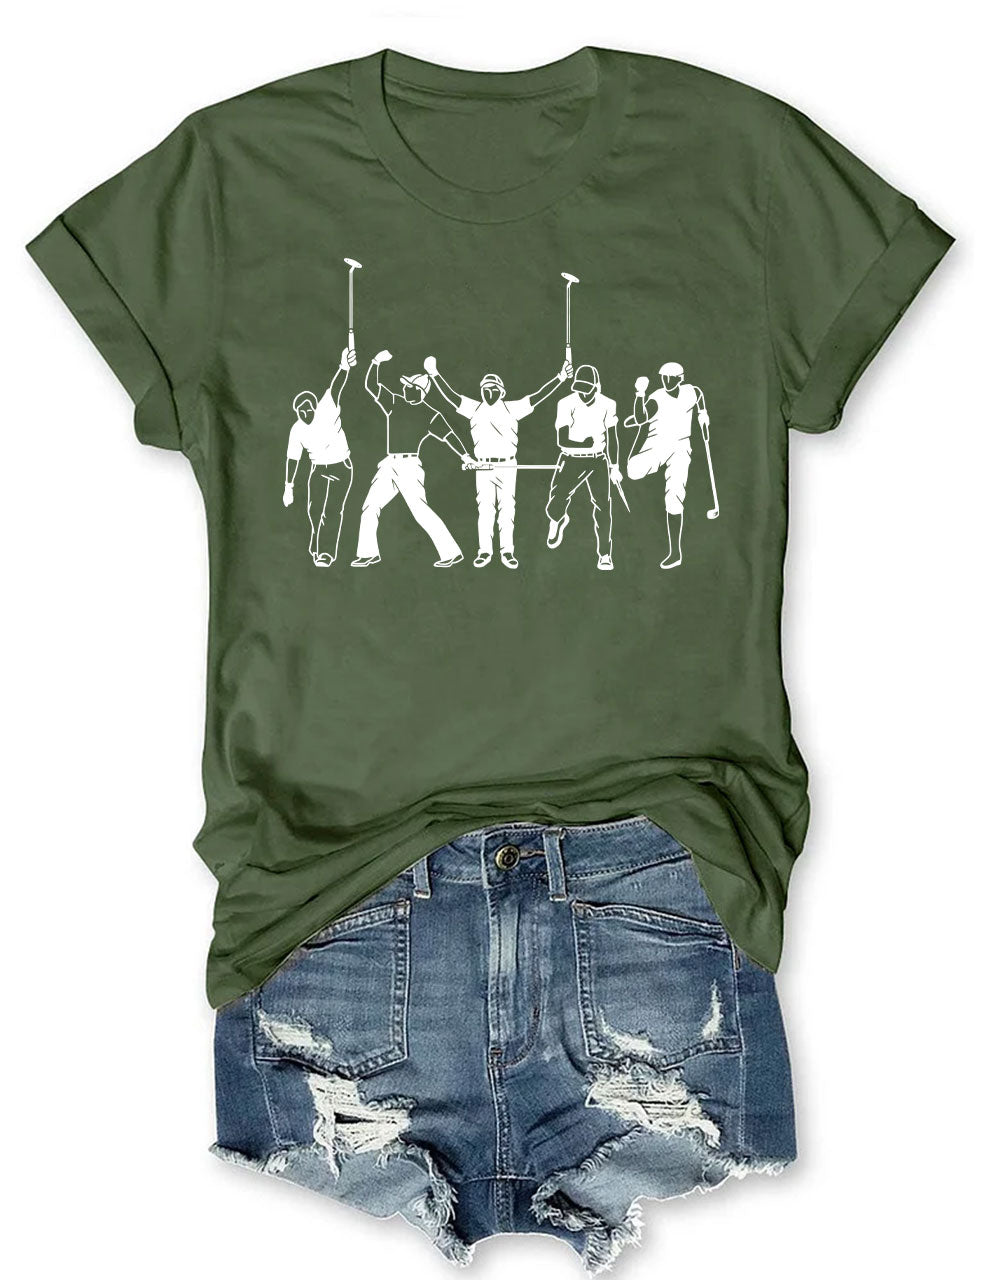 Golf Player T-shirt